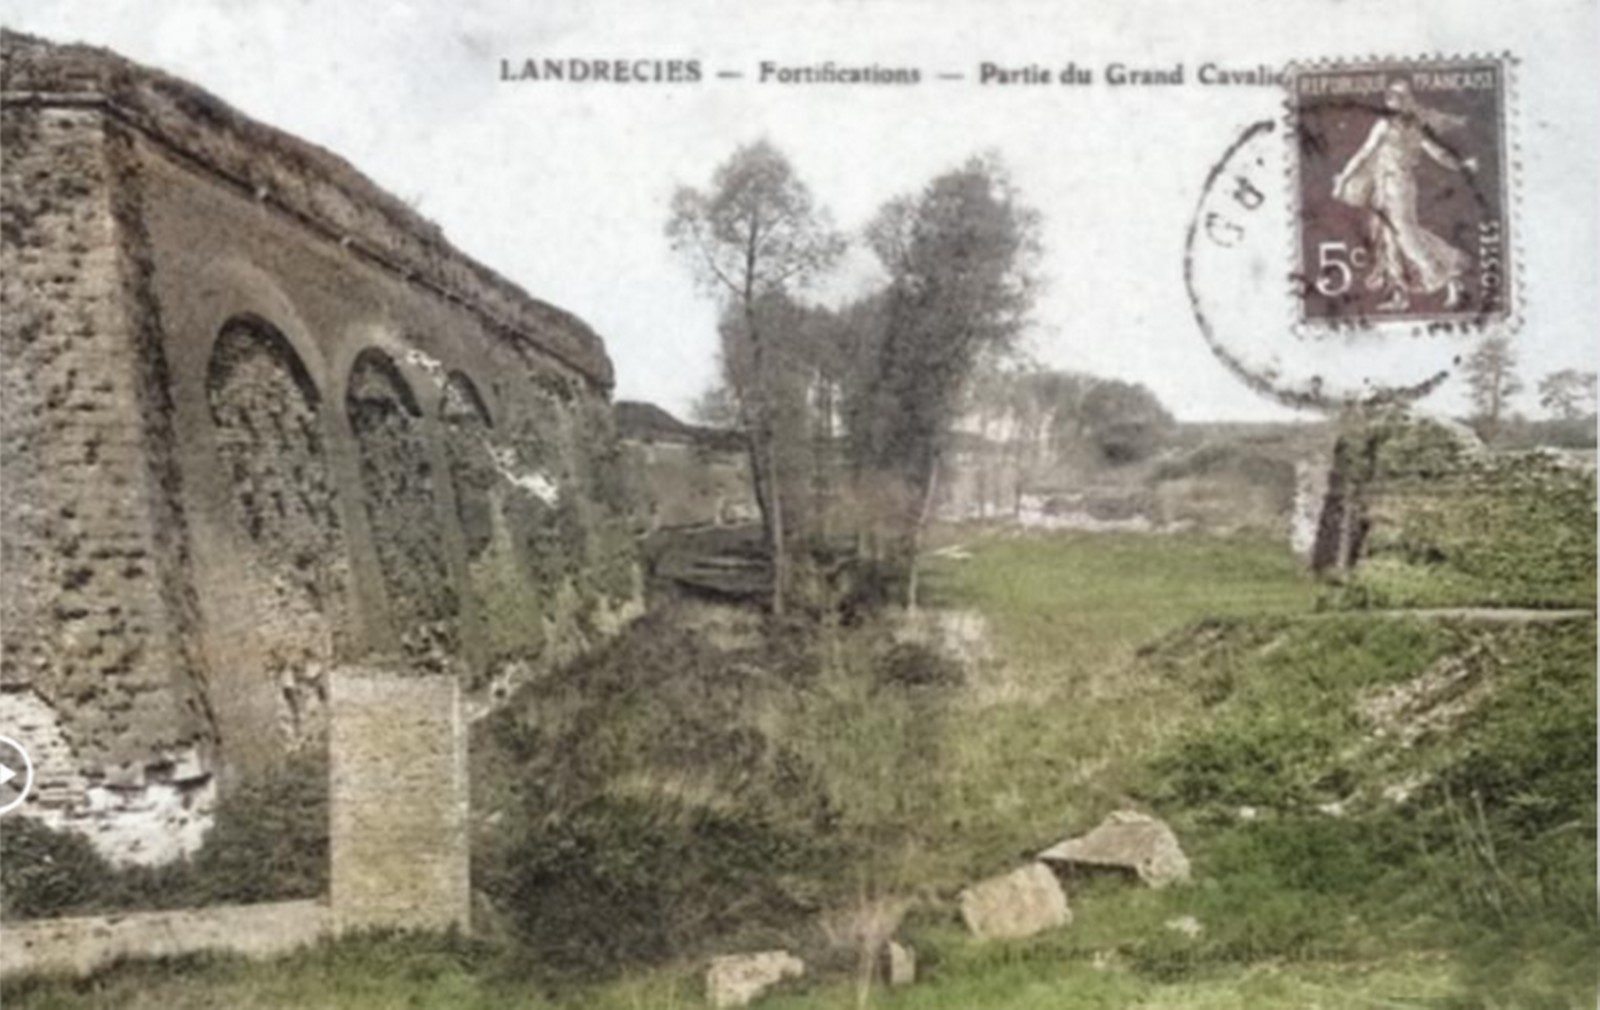 Remparts de Landrecies, front 4-5.